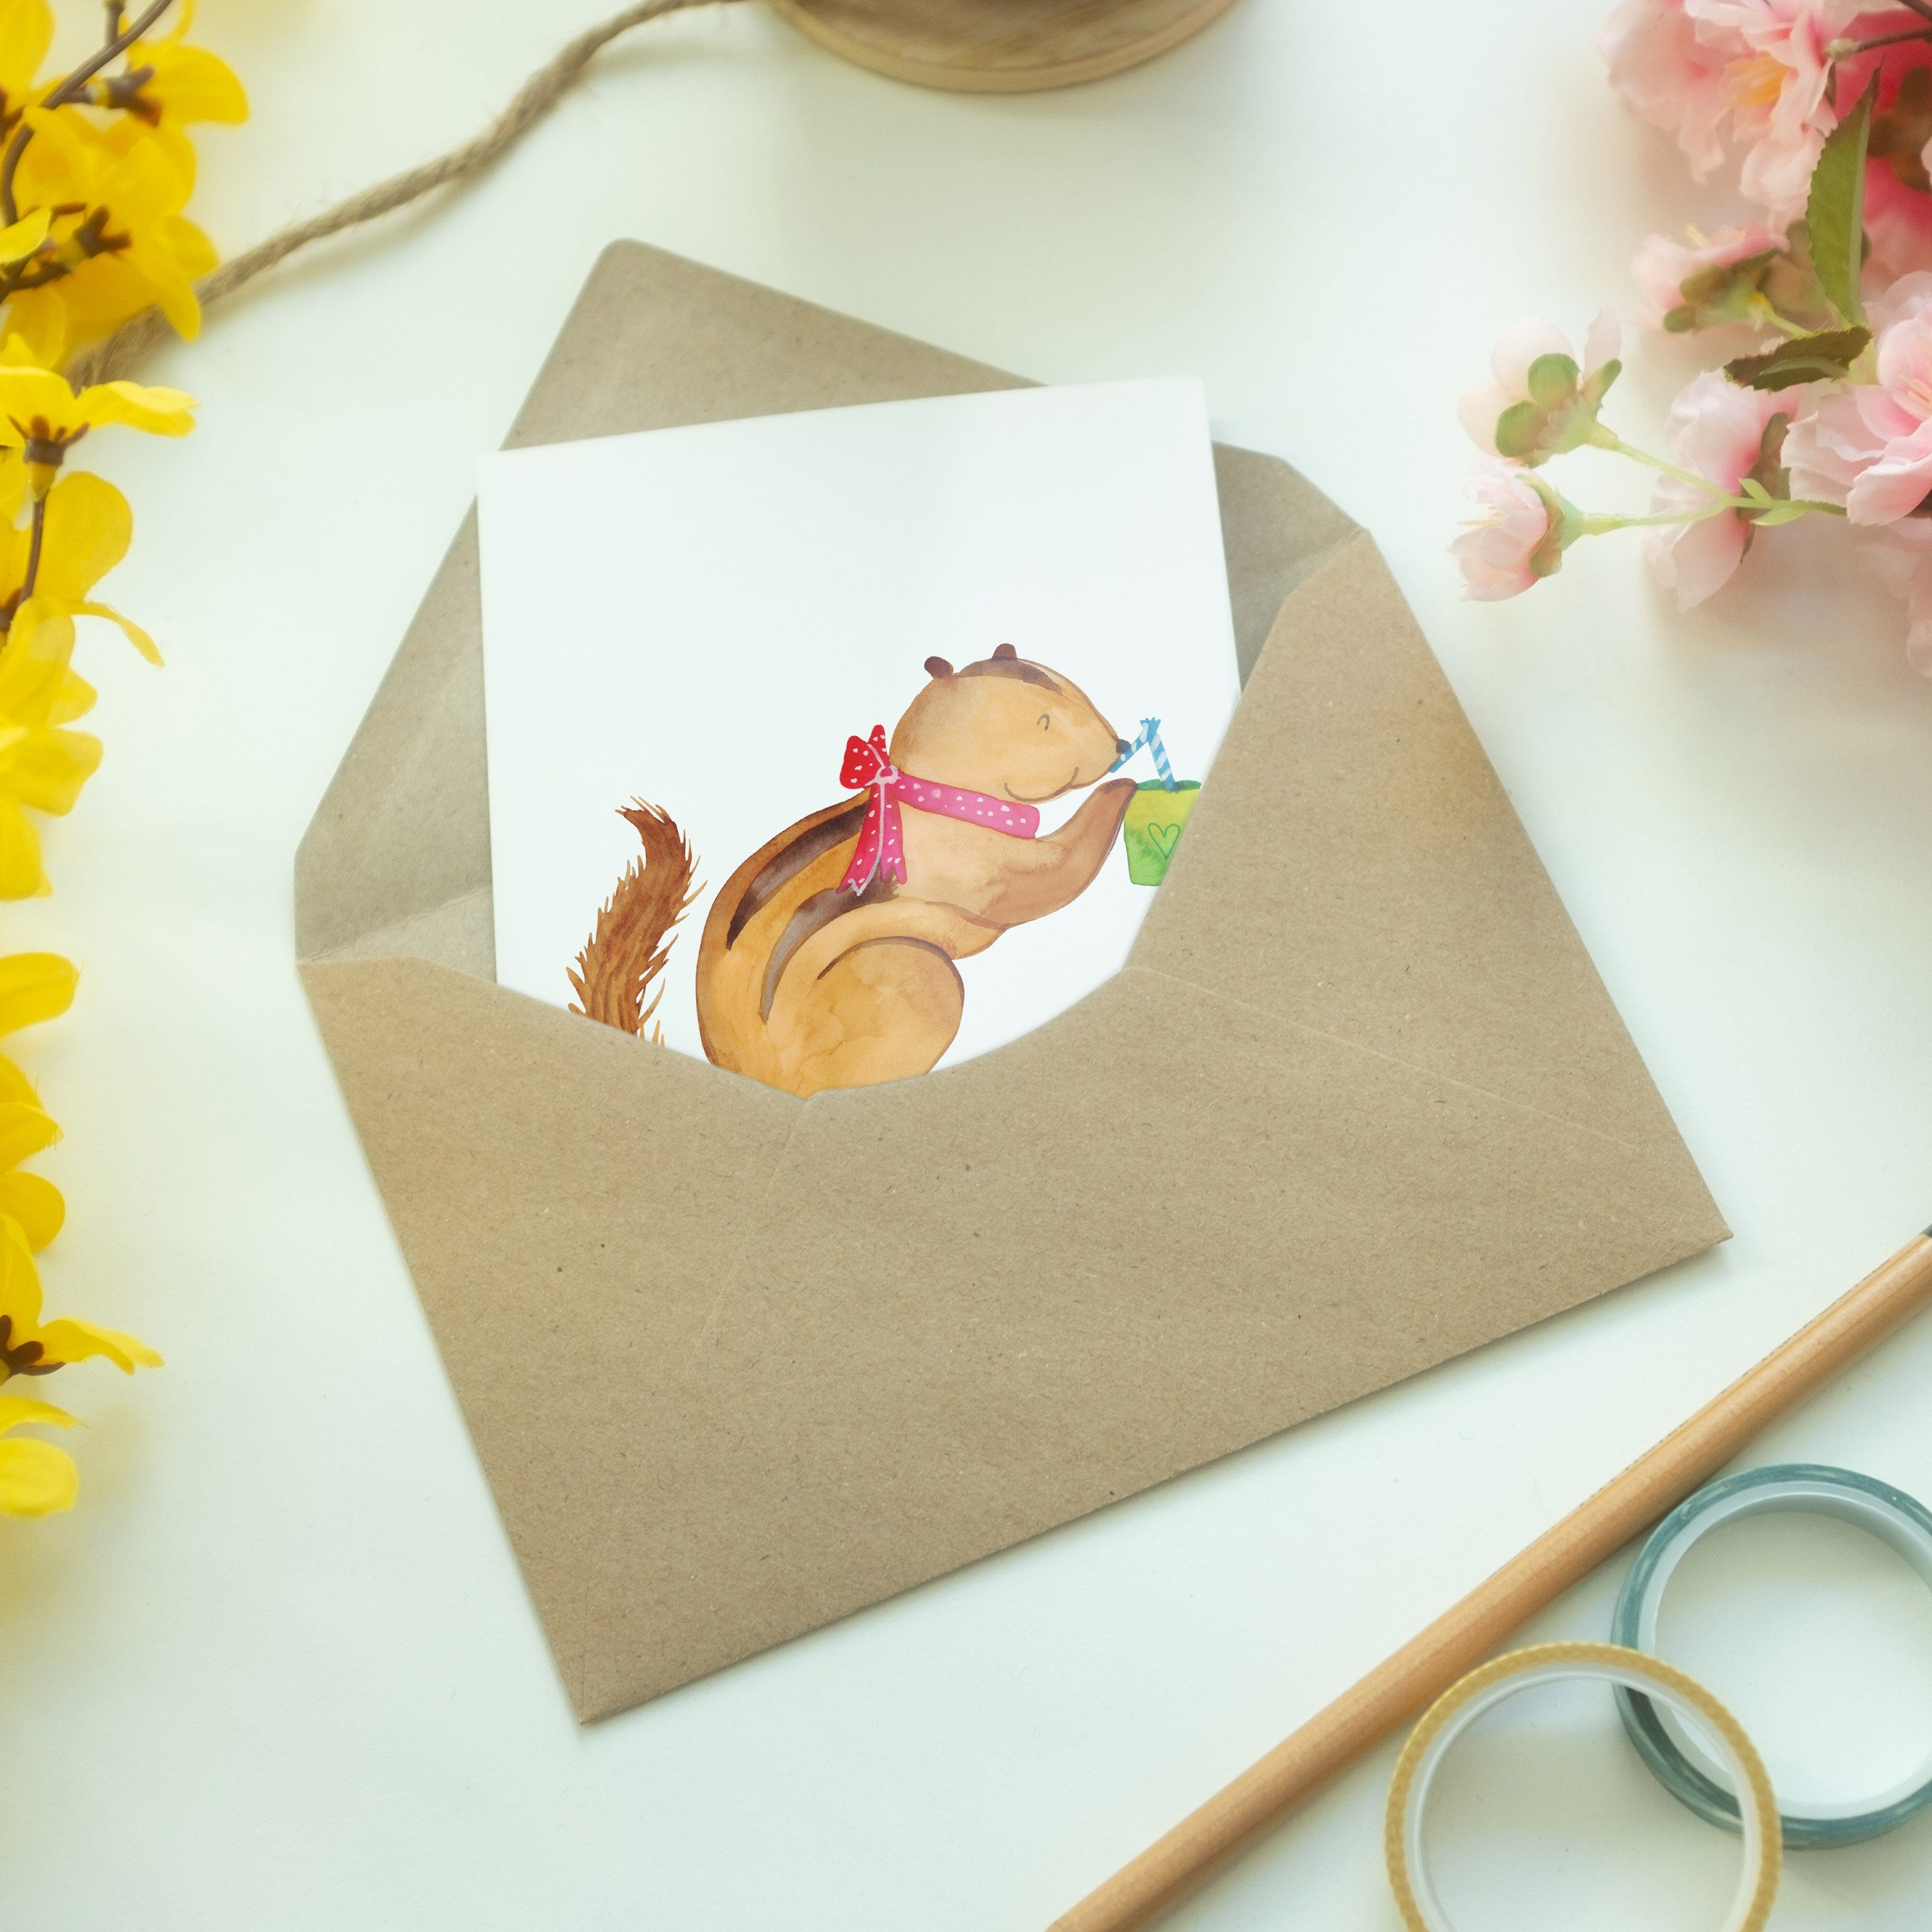 Mr. & Smoothie Eichhörnchen Mrs. Panda Weiß Hochzeitskarte, - Karte, Geschenk, Green Grußkarte 